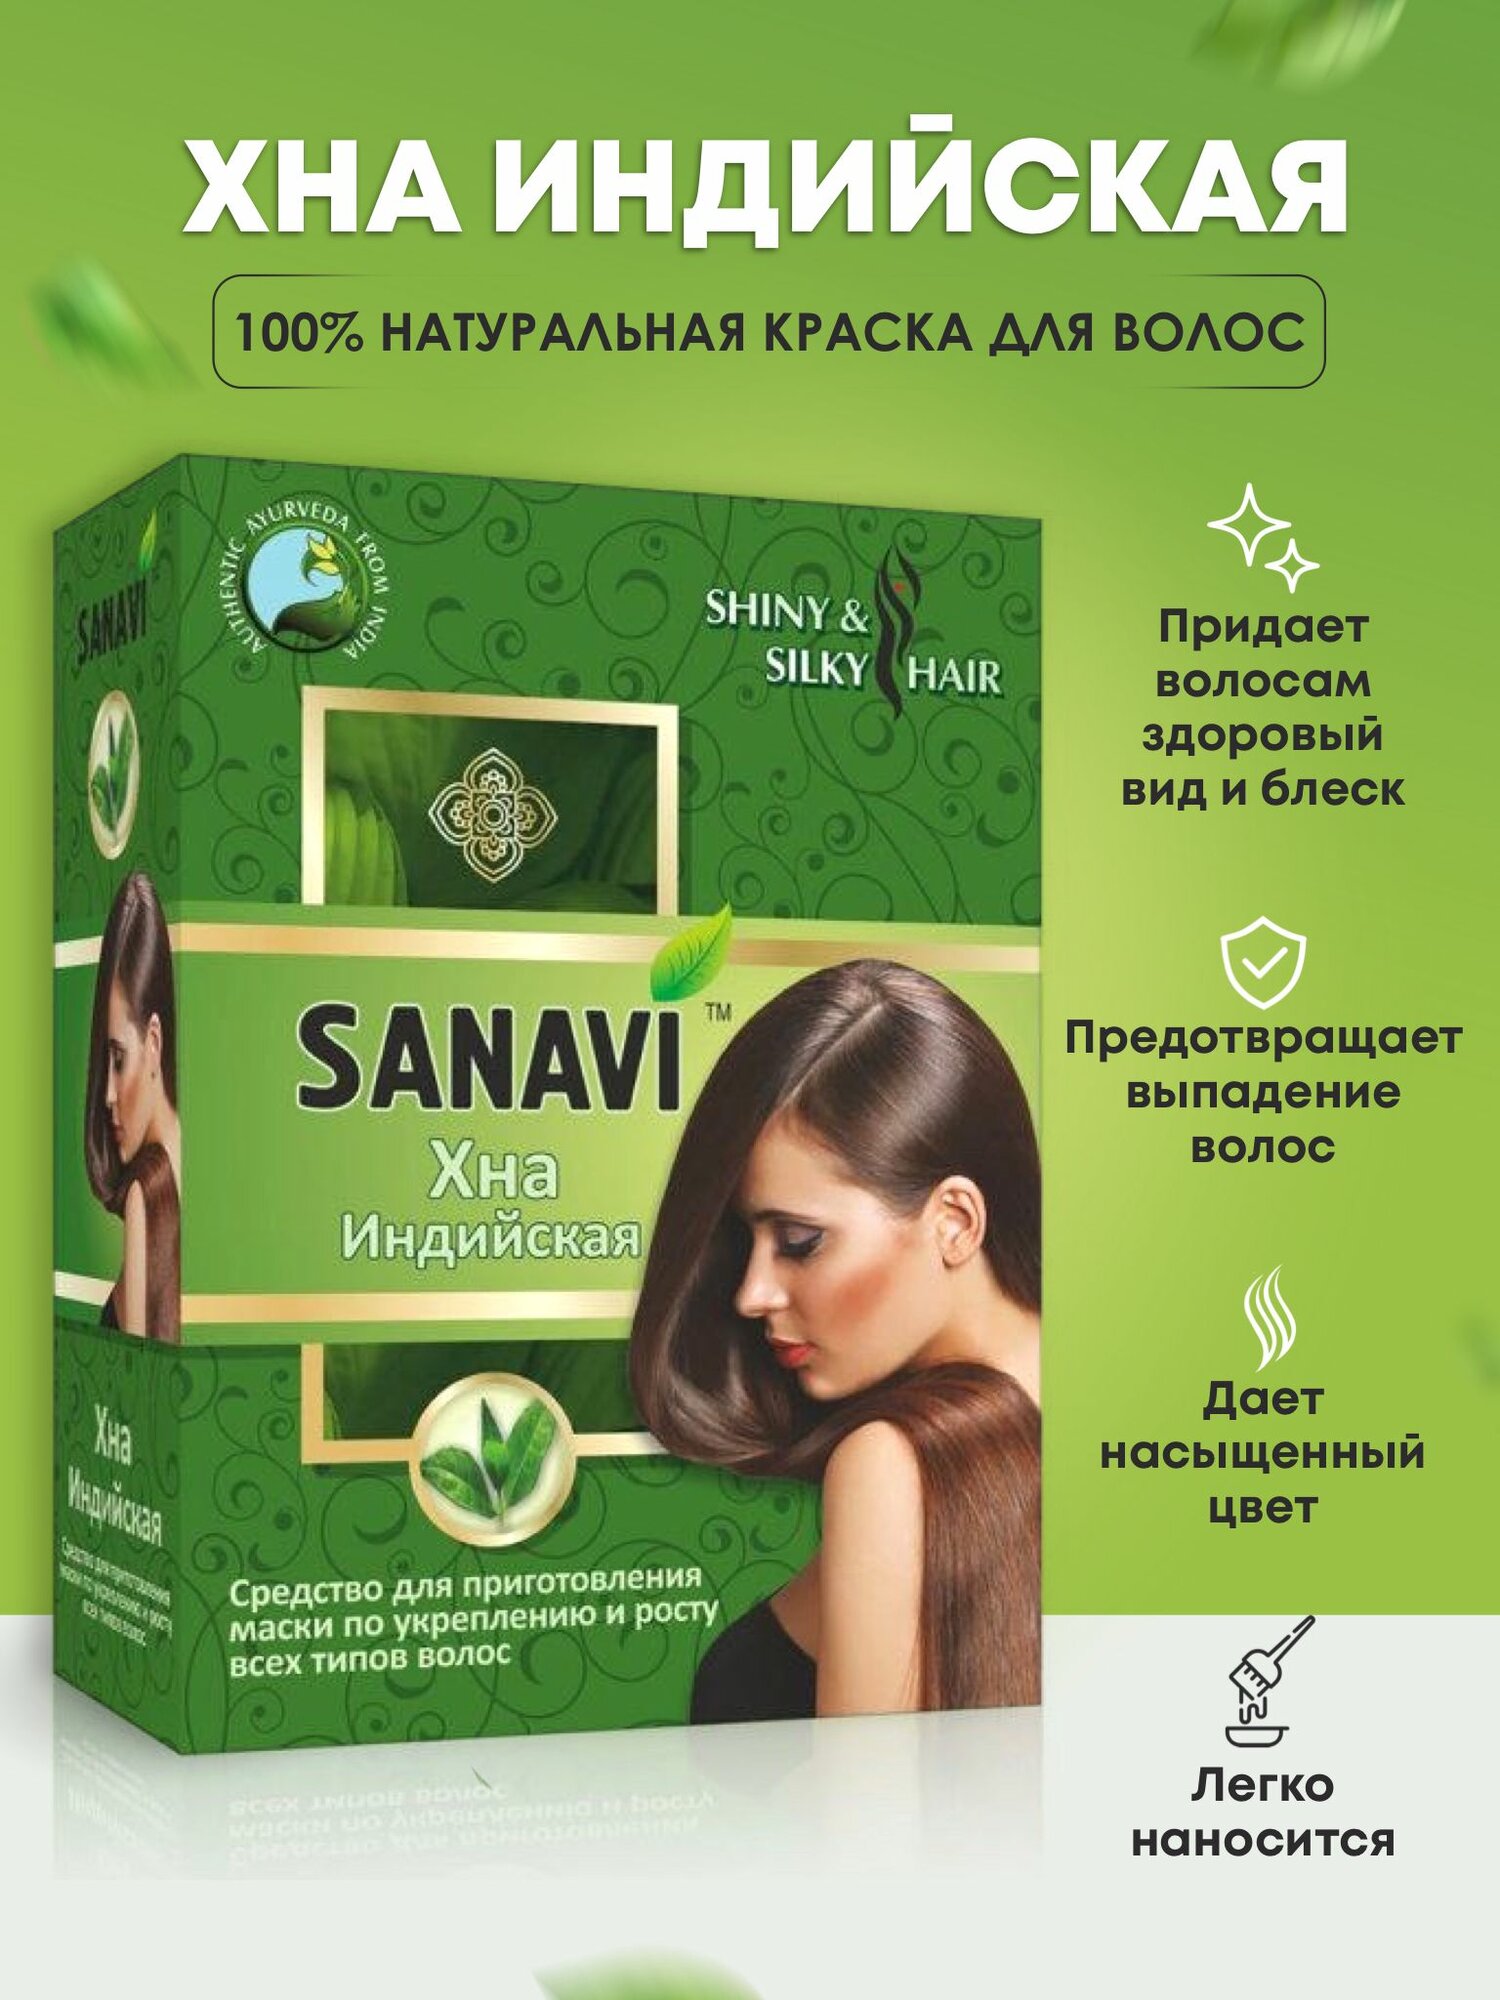 Хна индийская Sanavi для приготовления маски по укреплению и росту волос, 100 г